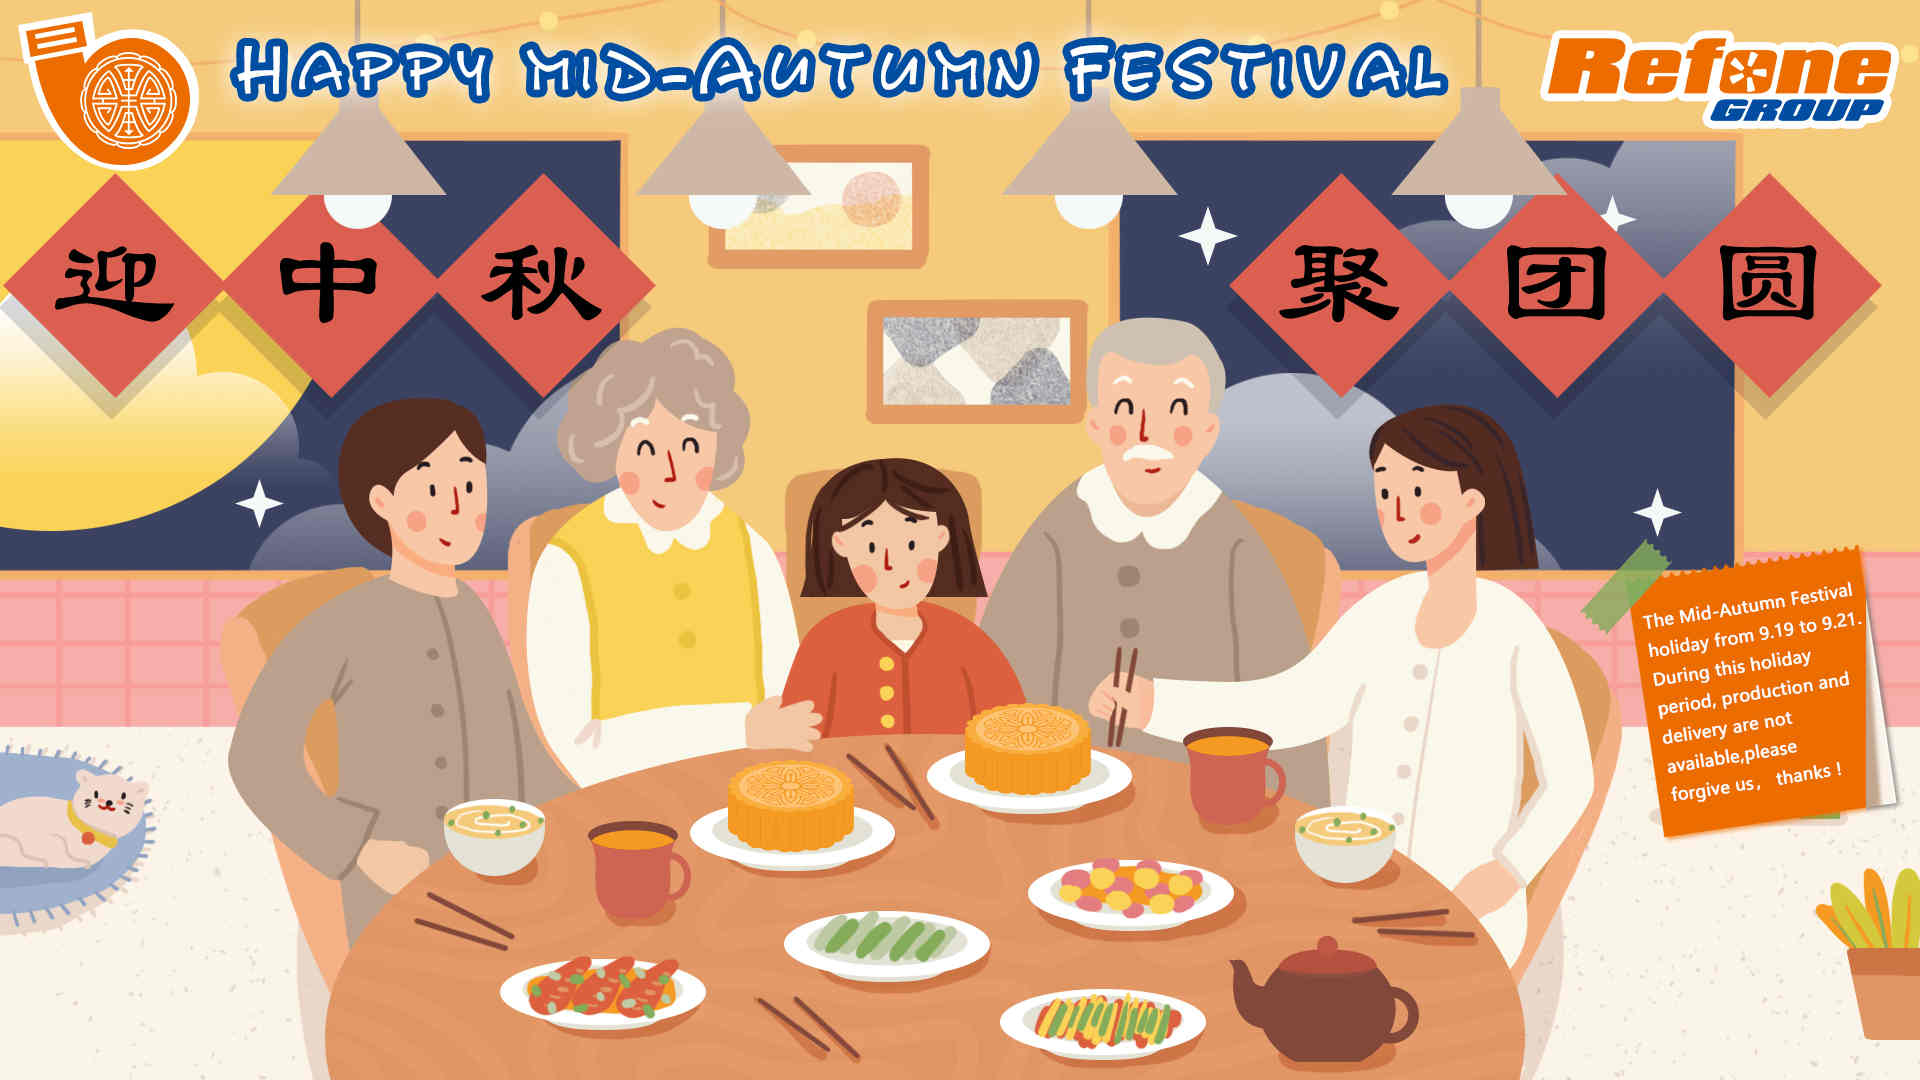 Приближается китайский фестиваль середины осени | Refoneturbo.com